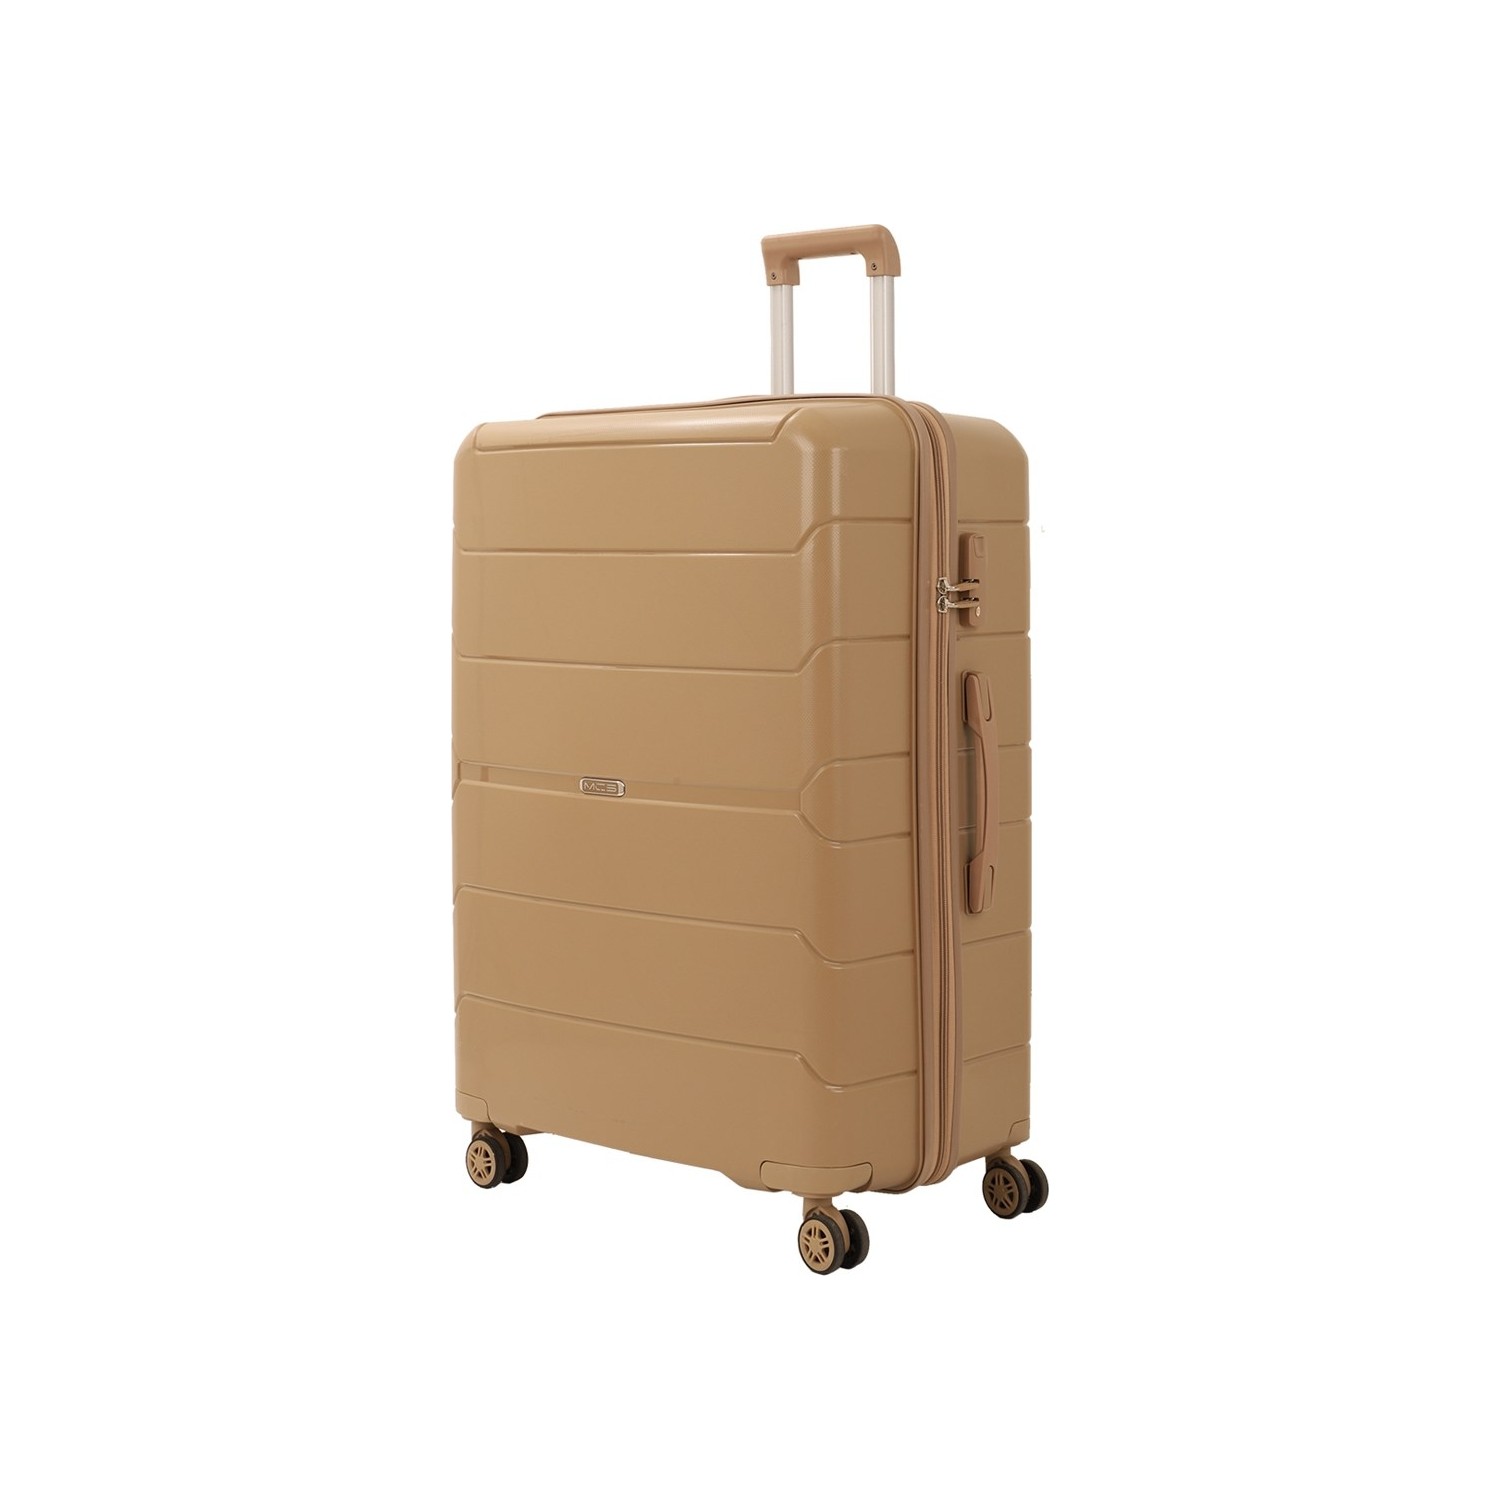 Большой чемодан из полипропилена MCS V366 L CHAMPAGE! Для 23 кг! - 1